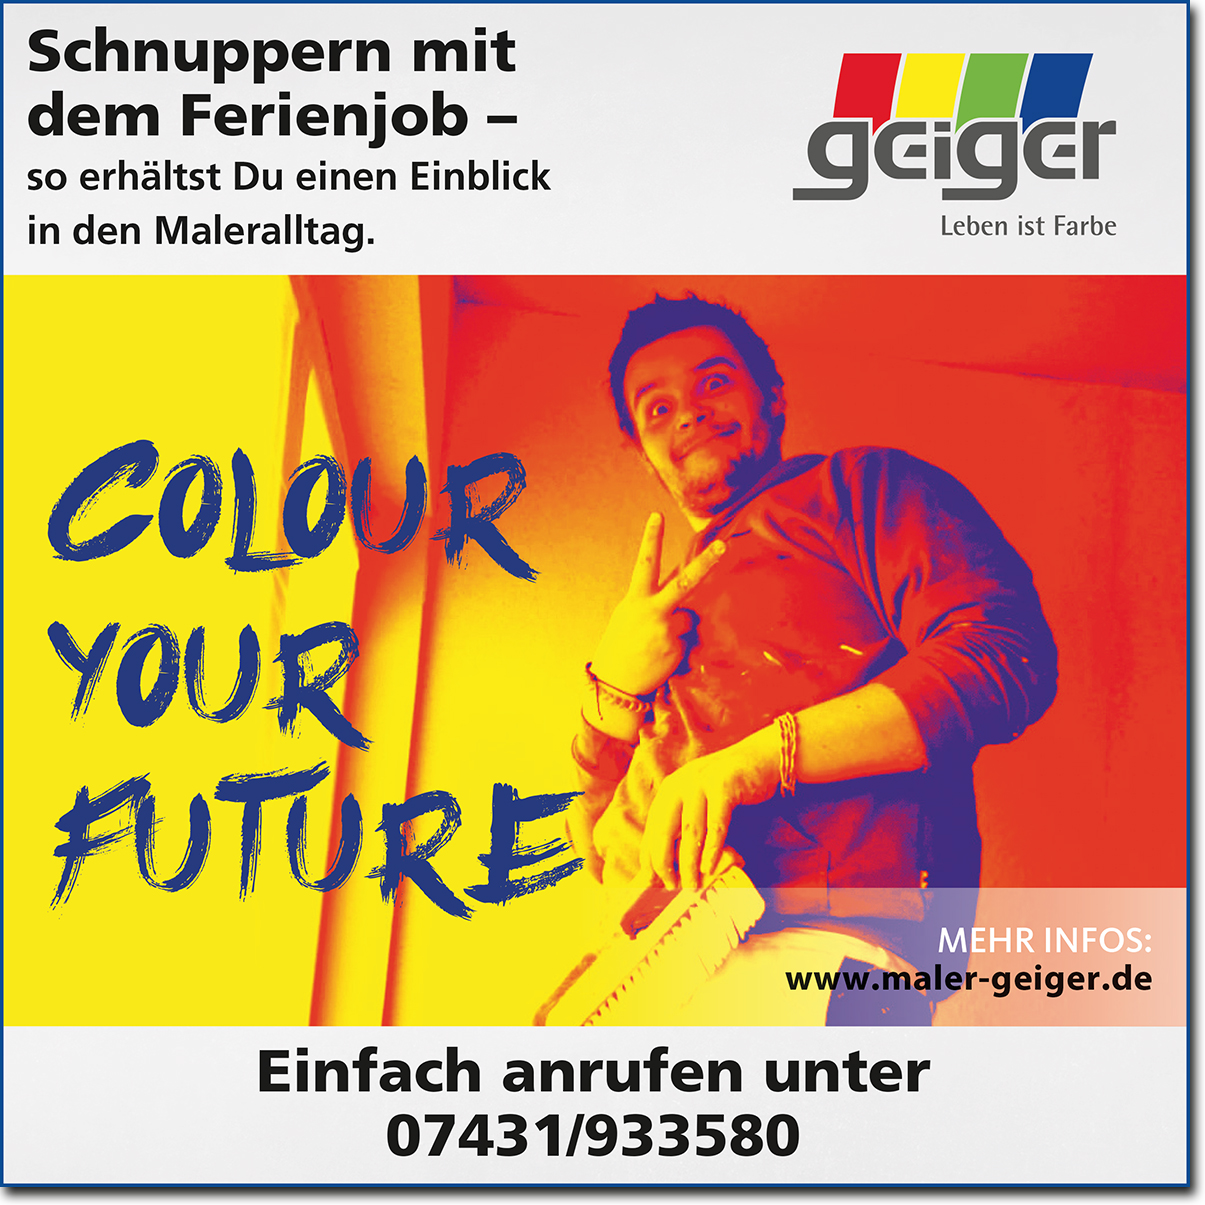 Dieter Geiger GmbH